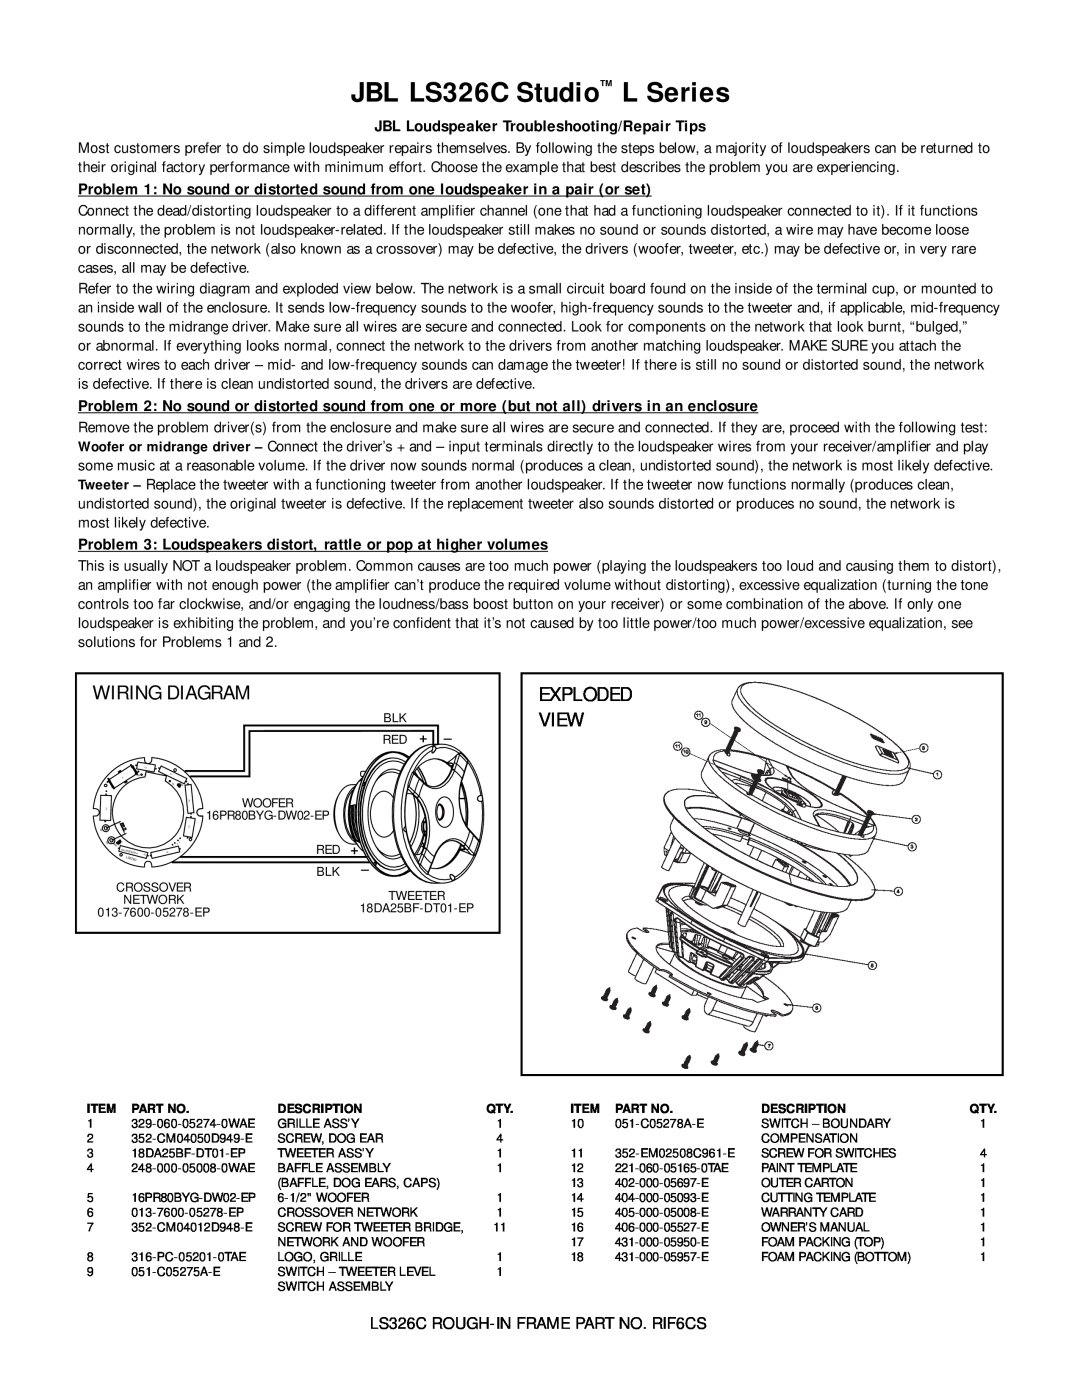 JBL warranty JBL LS326C Studio L Series, Wiring Diagram, View 